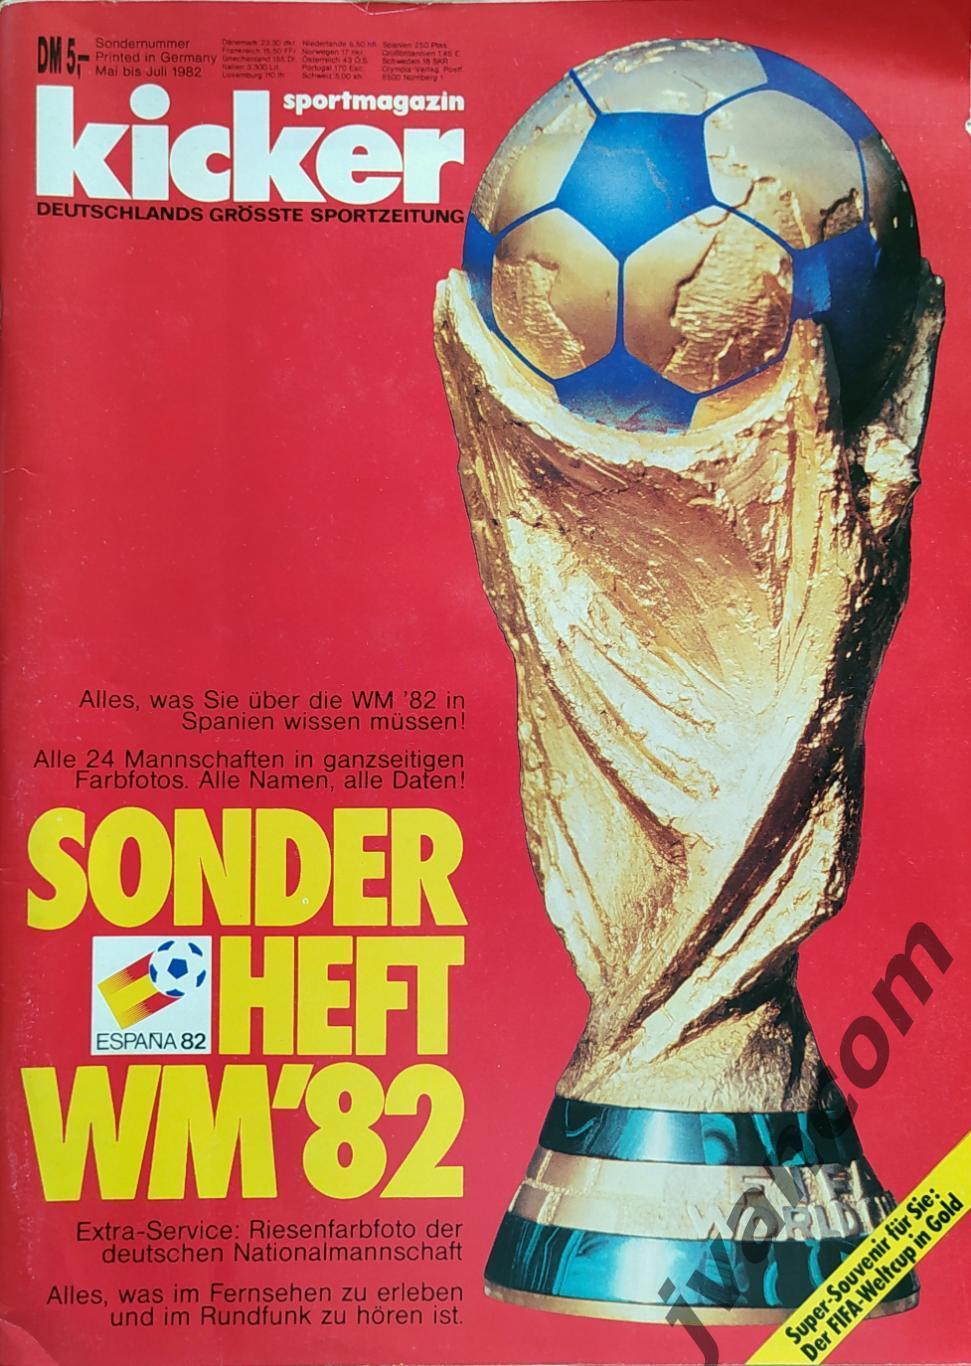 KICKER SONDERHEFT. Чемпионат Мира по футболу 1982 года. Превью участников.